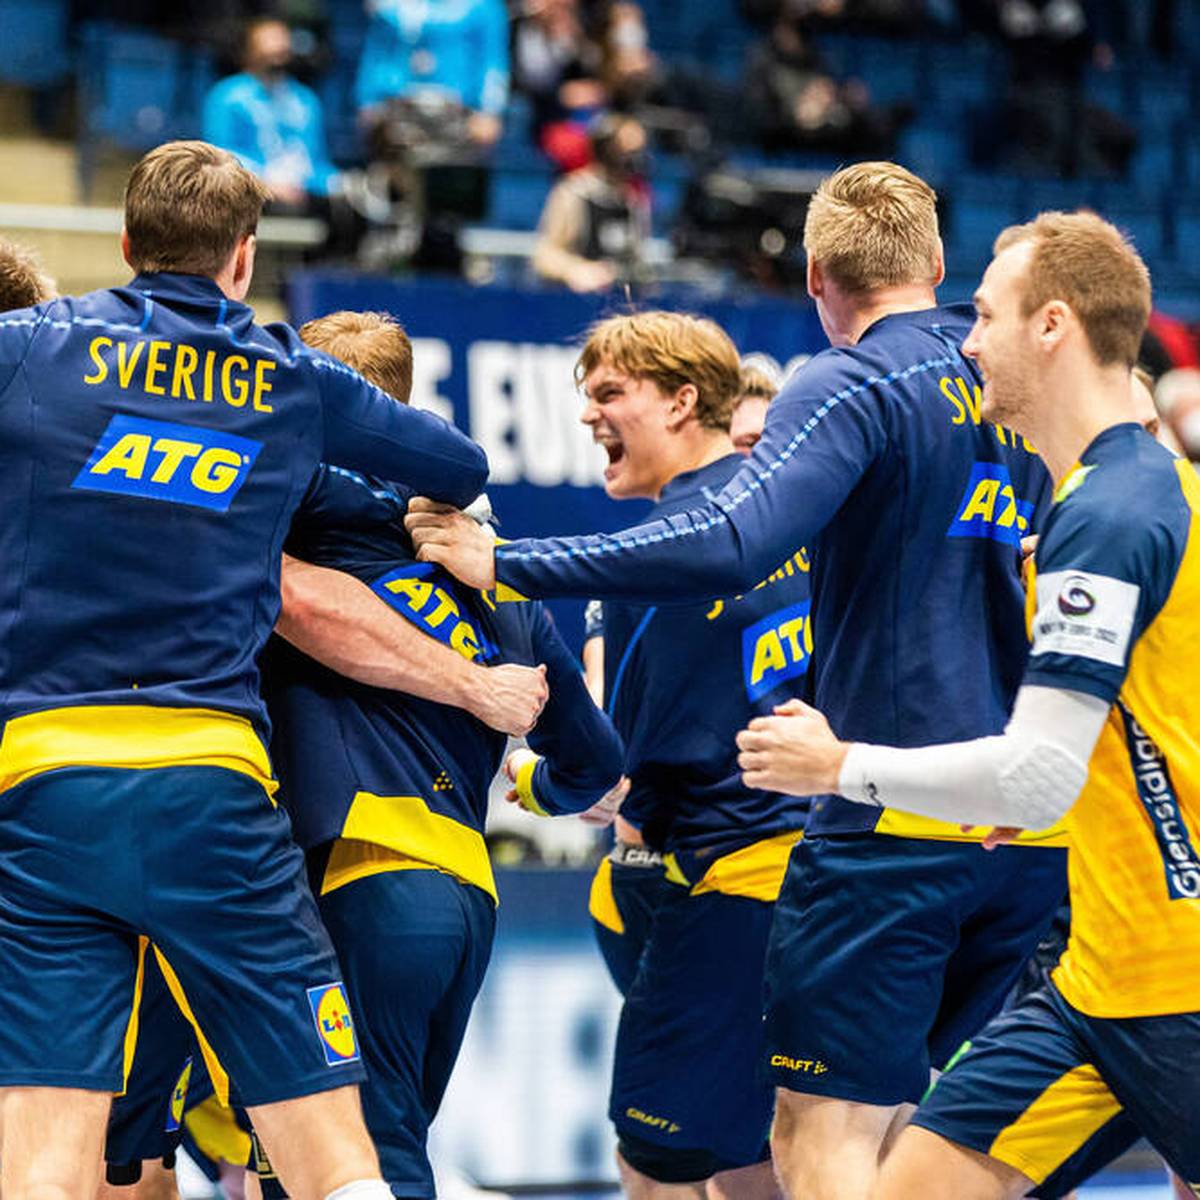 Schweden erreicht nach einem dramatischen Sieg gegen Rivale Norwegen im EM-Halbfinale. Während die Schweden feiern, reagieren Norwegens Spieler und Presse entsetzt. Ärger gibt es rund um Sagosen.